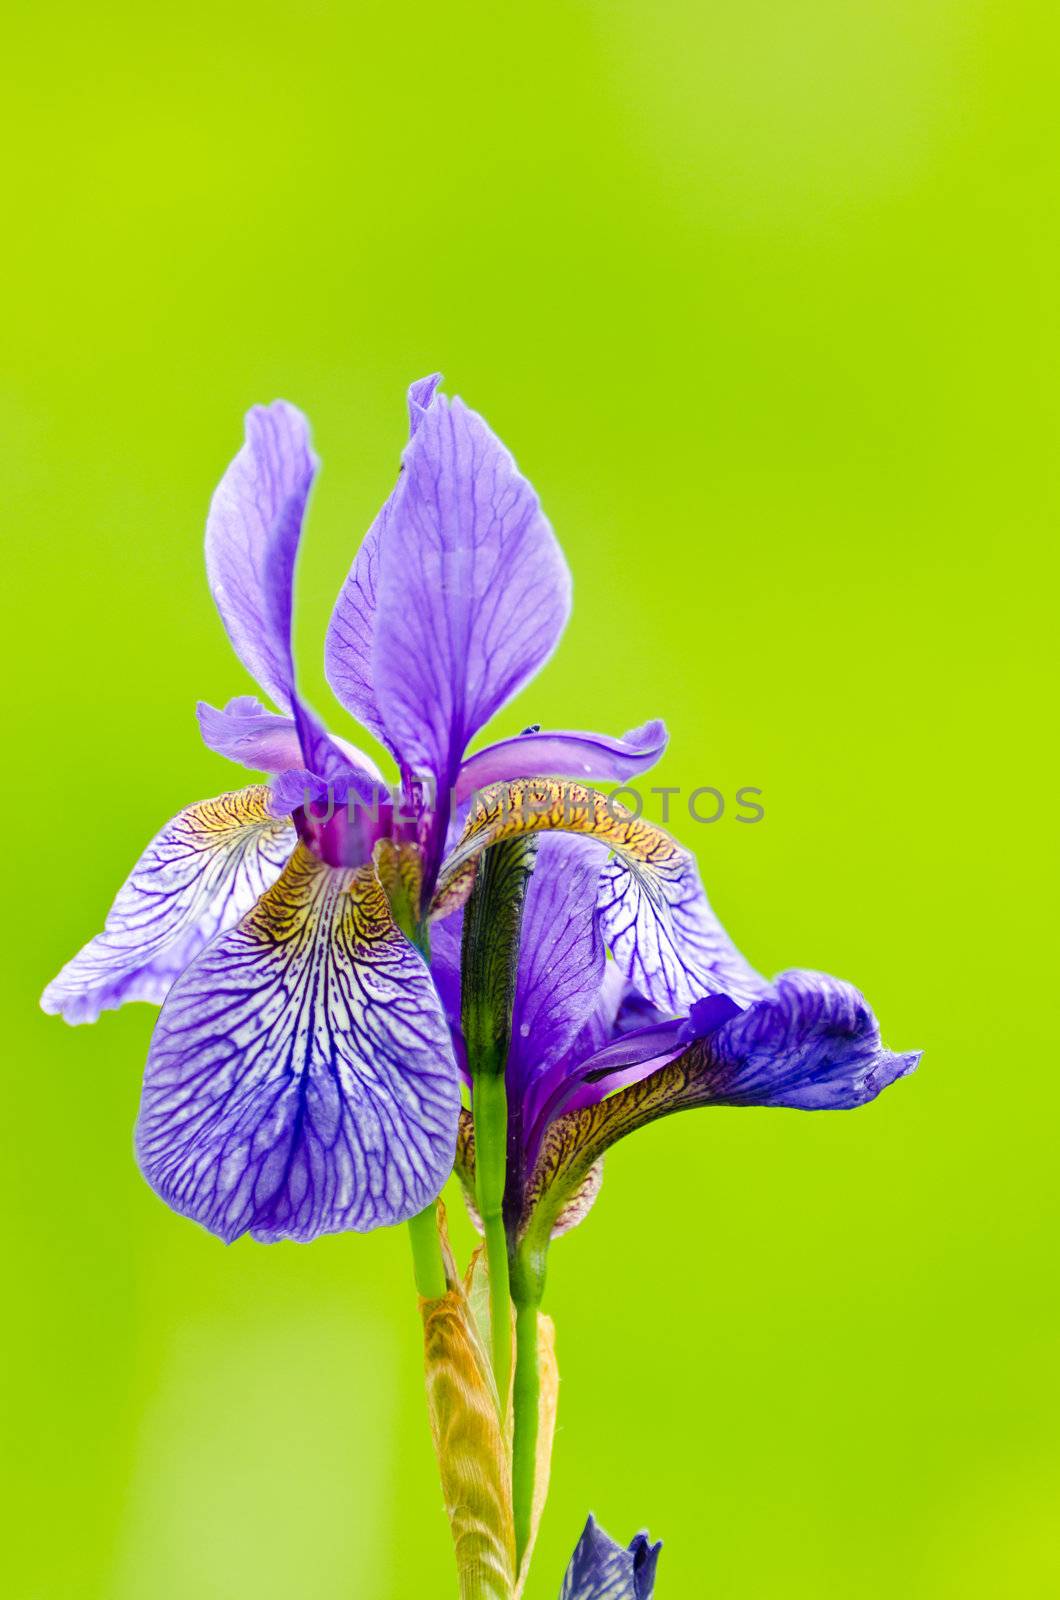 japanese iris or Siberian iris by Sergieiev